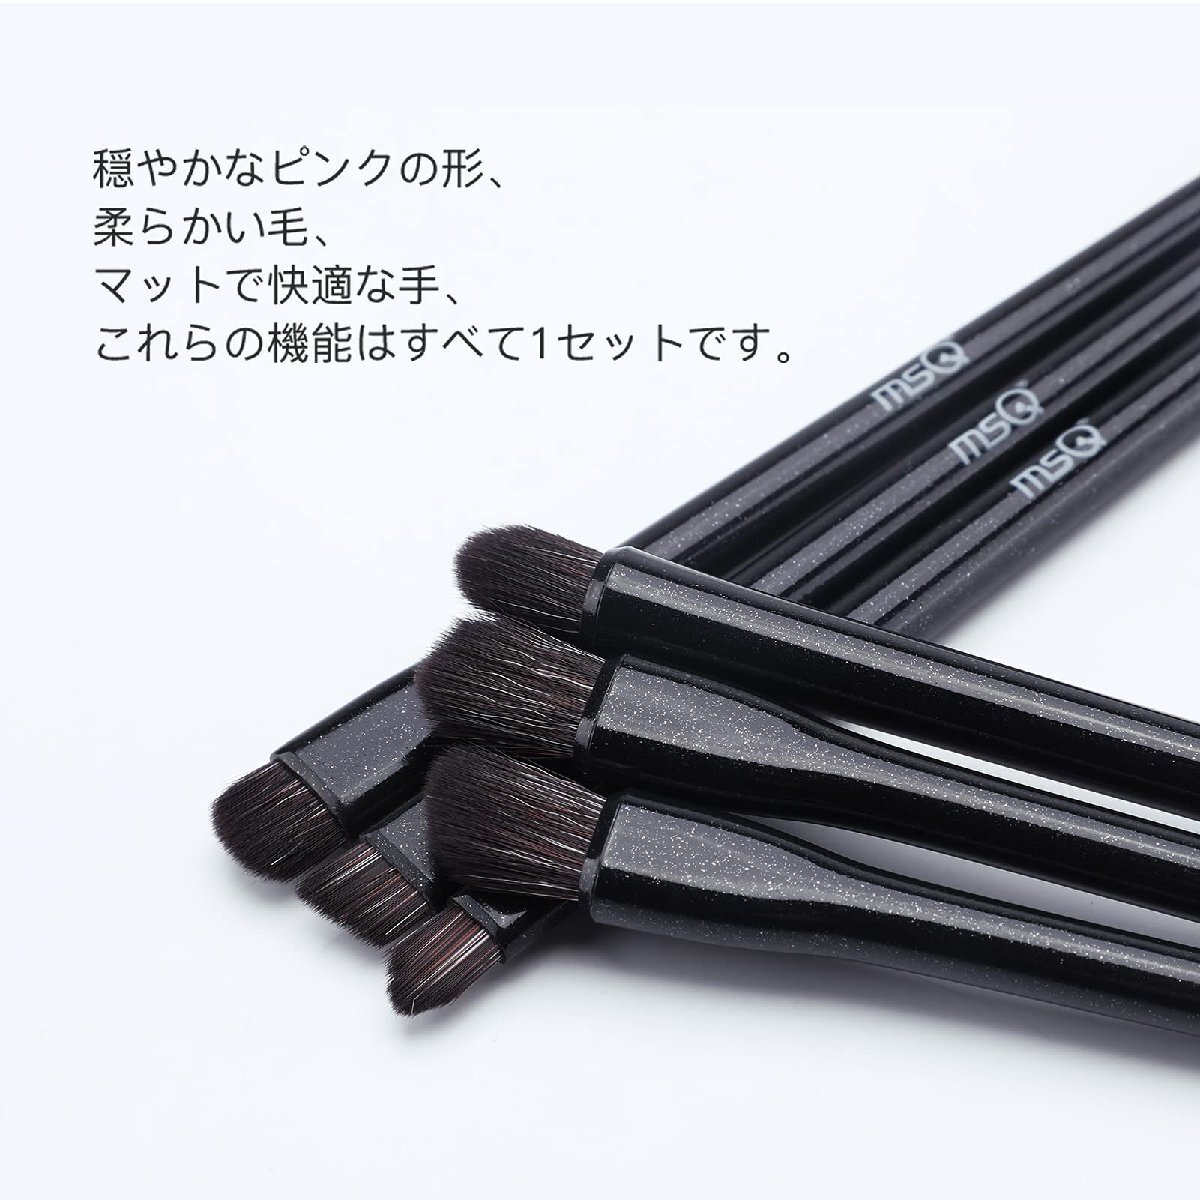 MSQ アイシャドウ ブラシ 6本 メイク 筆 高級繊維毛 超柔らかい 日常の化粧 携帯便利 敏感肌適用 (ブラック)_画像6